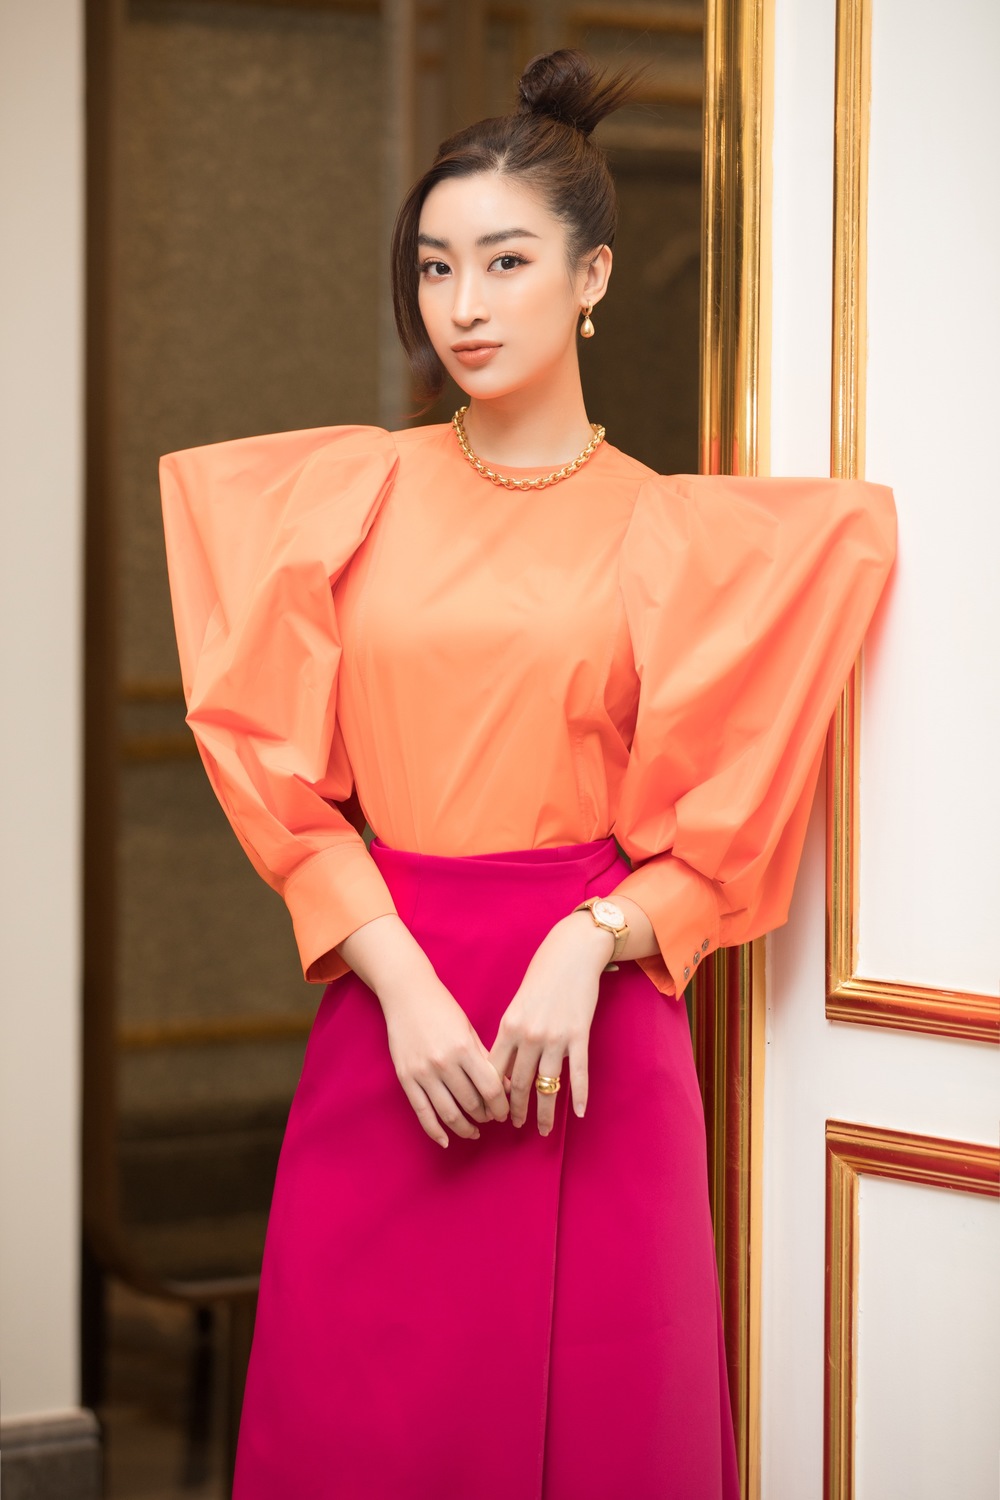 
Là một trong những thành viên của Ban giám khảo Hoa hậu Việt Nam 2020, thần sắc của cô cũng dần trưởng thành và tác phong làm việc cũng trở nên chuyên nghiệp hơn (Ảnh: NVCC). - Tin sao Viet - Tin tuc sao Viet - Scandal sao Viet - Tin tuc cua Sao - Tin cua Sao